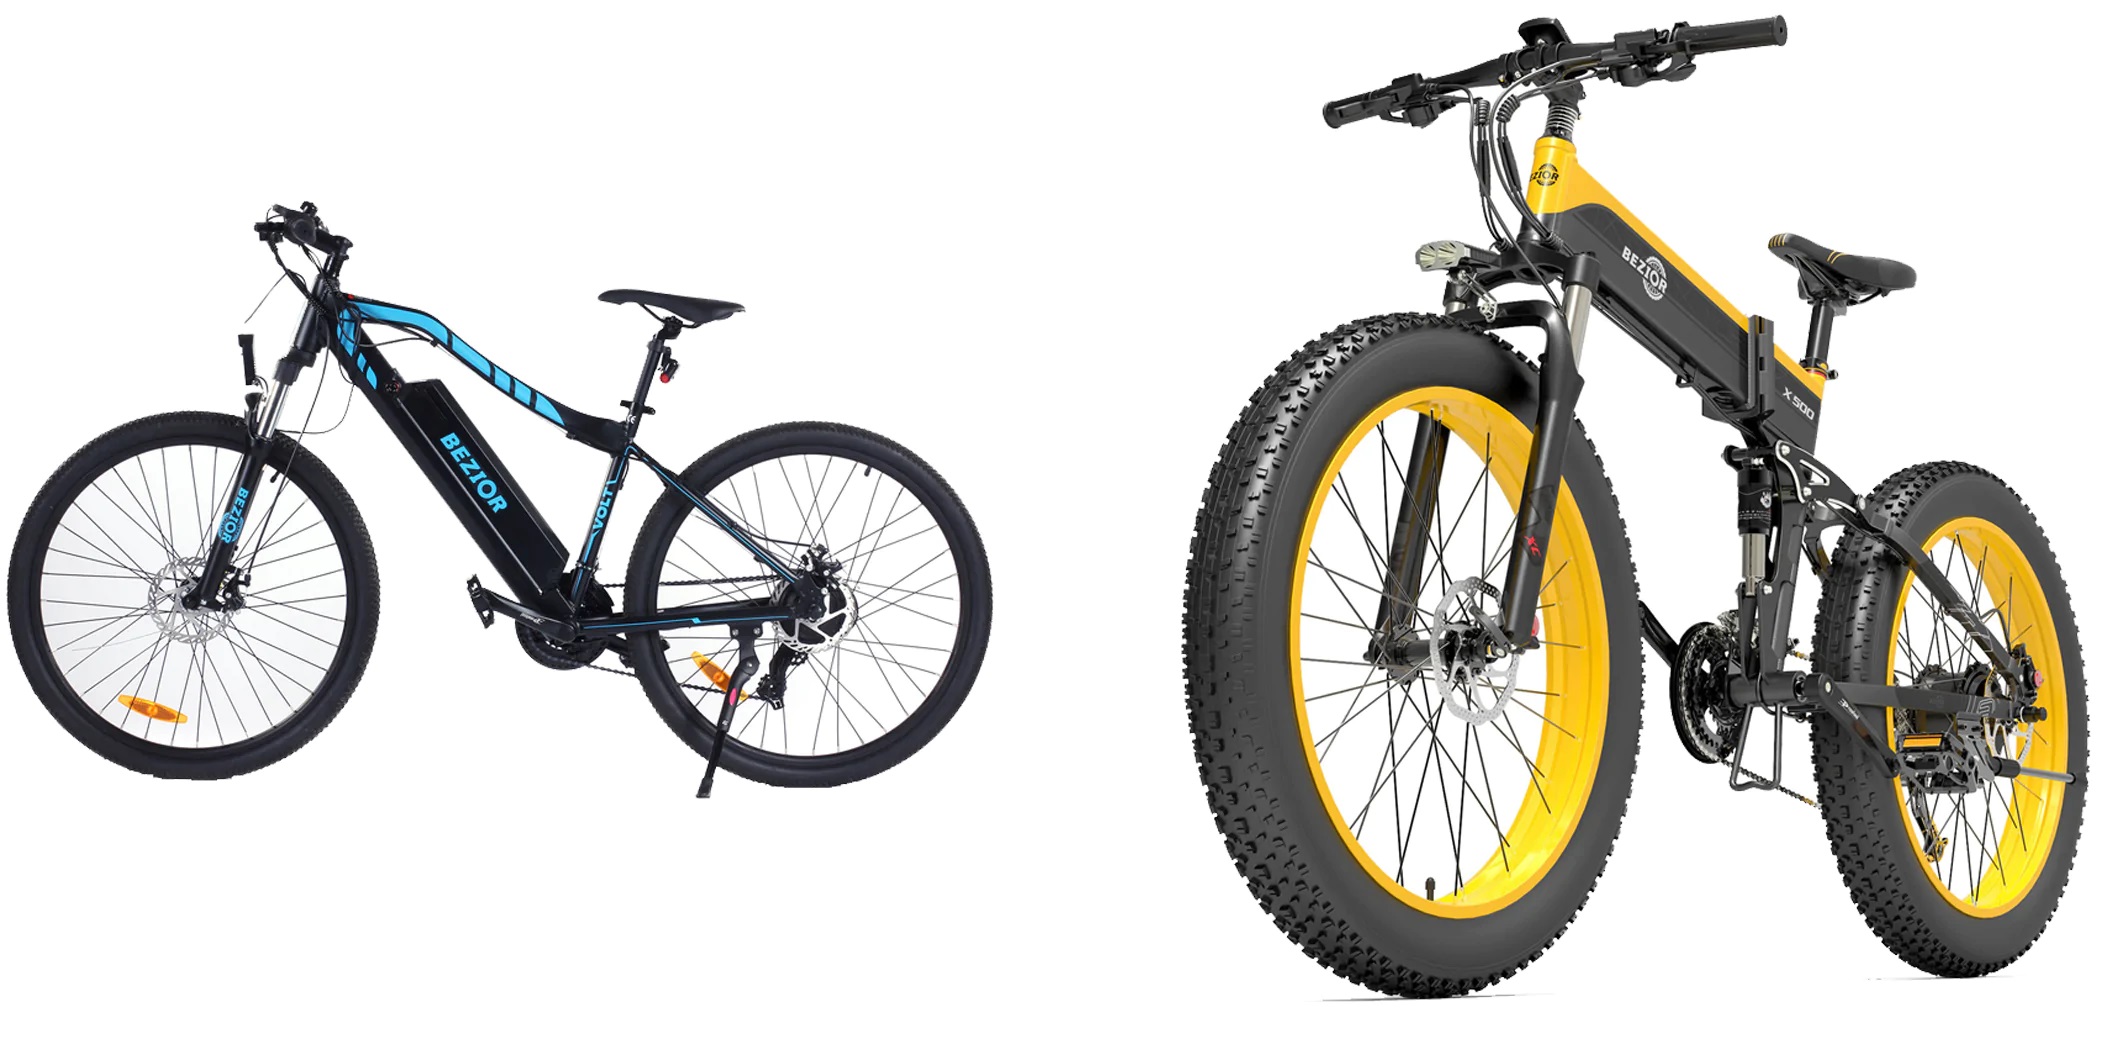 Le bici elettriche Bezior X500 e M1 sono in offerta a un prezzo mai visto prima